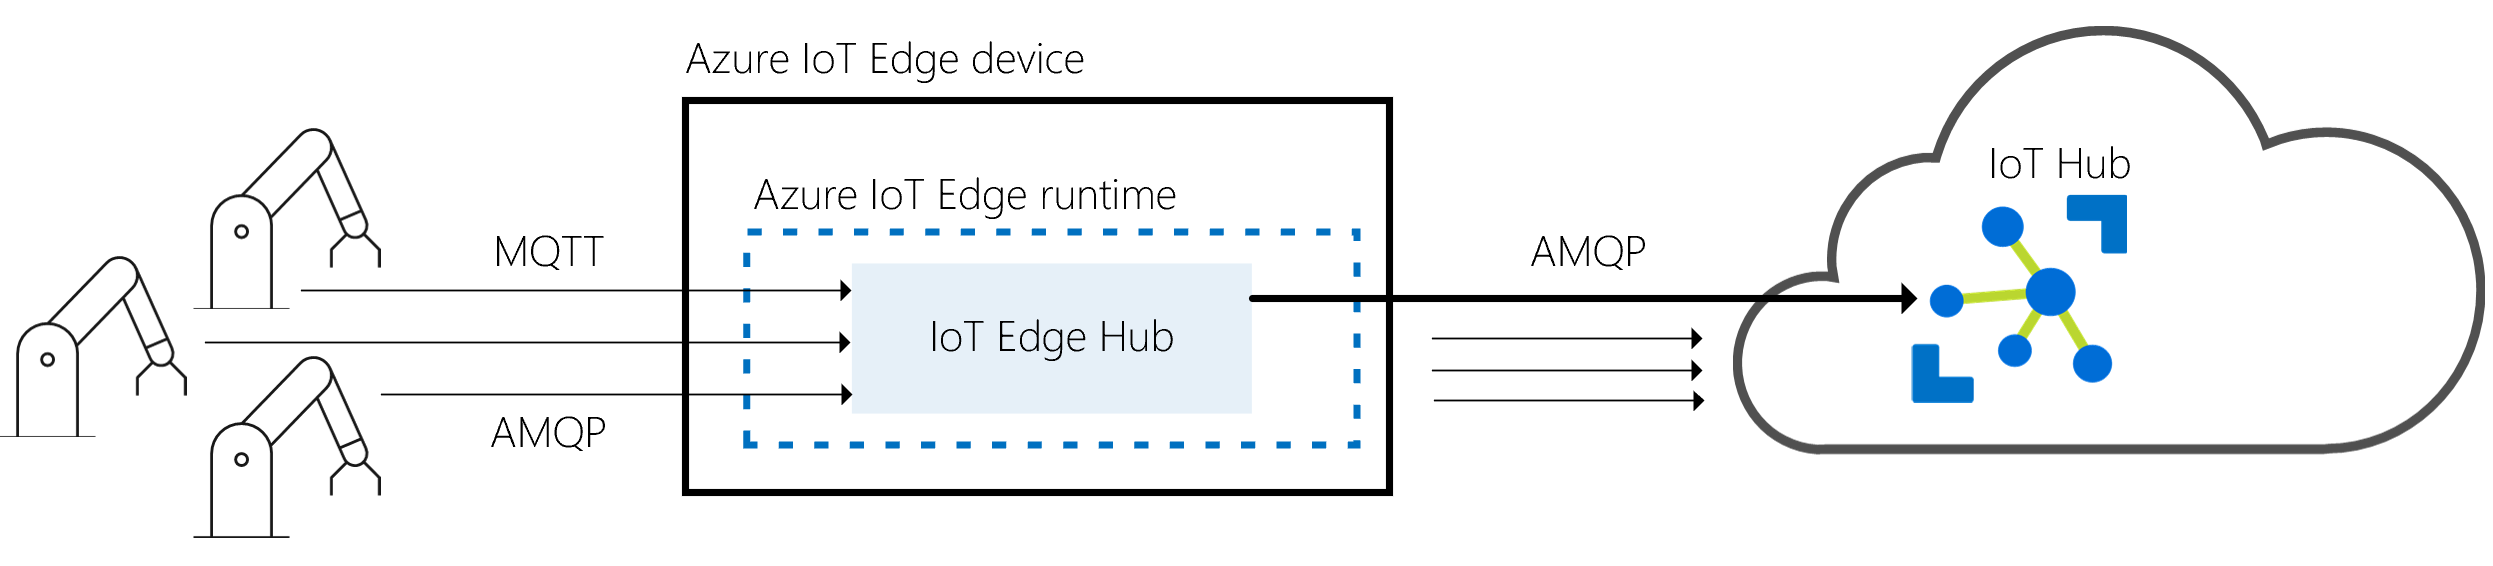 Capture d’écran montrant les relations avec le hub I o T Edge en tant que passerelle entre des appareils physiques et i o T Hub.